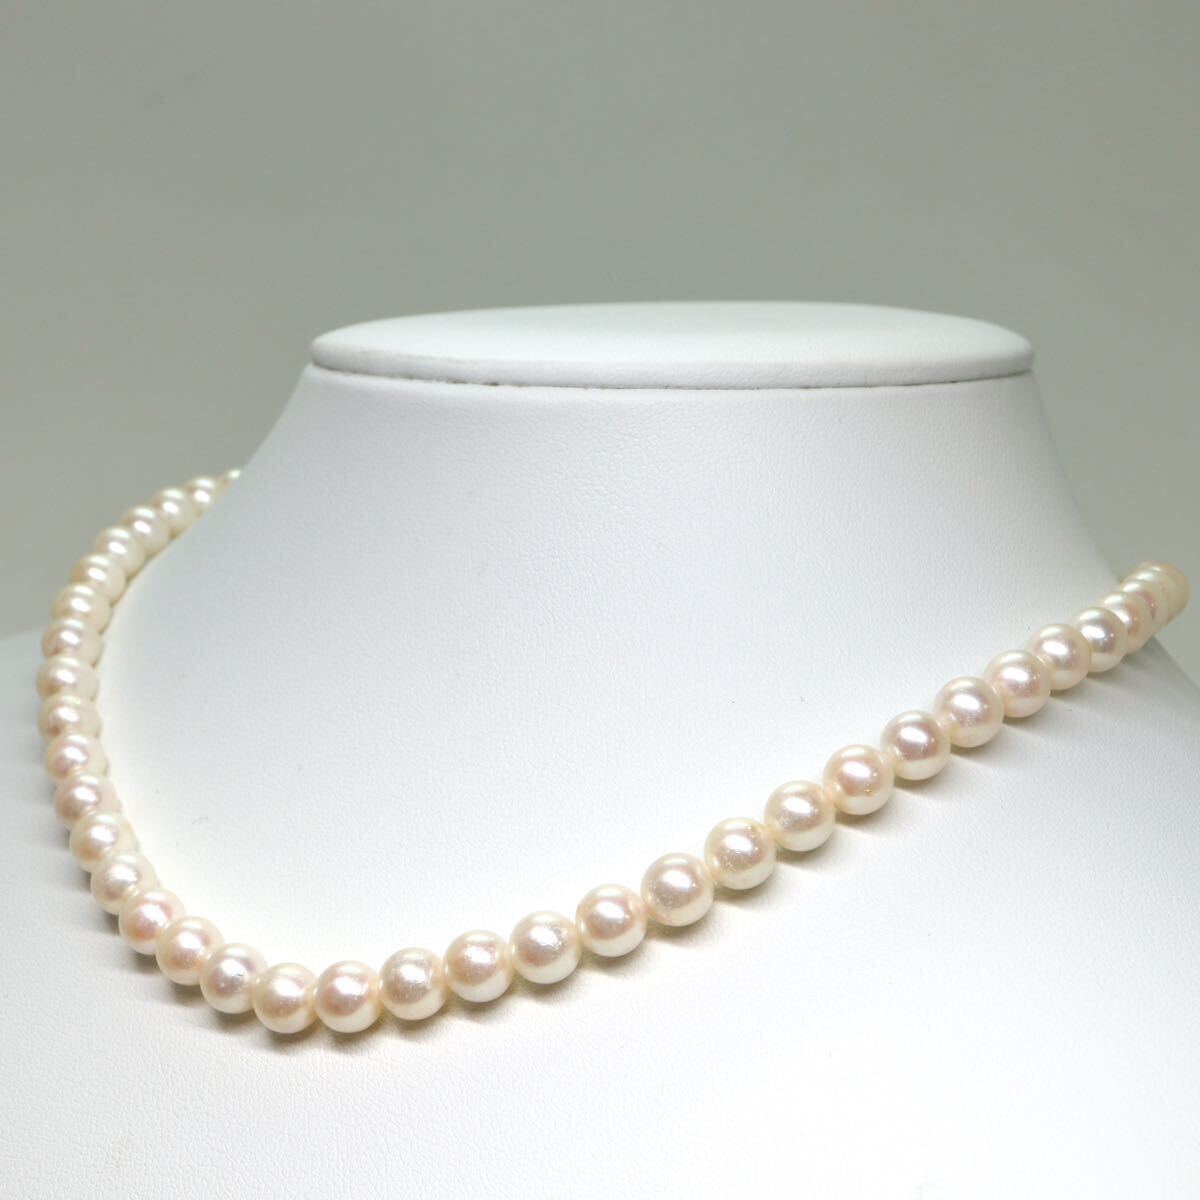 《アコヤ本真珠ネックレス》A 約6.5-7.0mm珠 27.3g 約40cm pearl necklace ジュエリー jewelry CE5/CE5の画像3